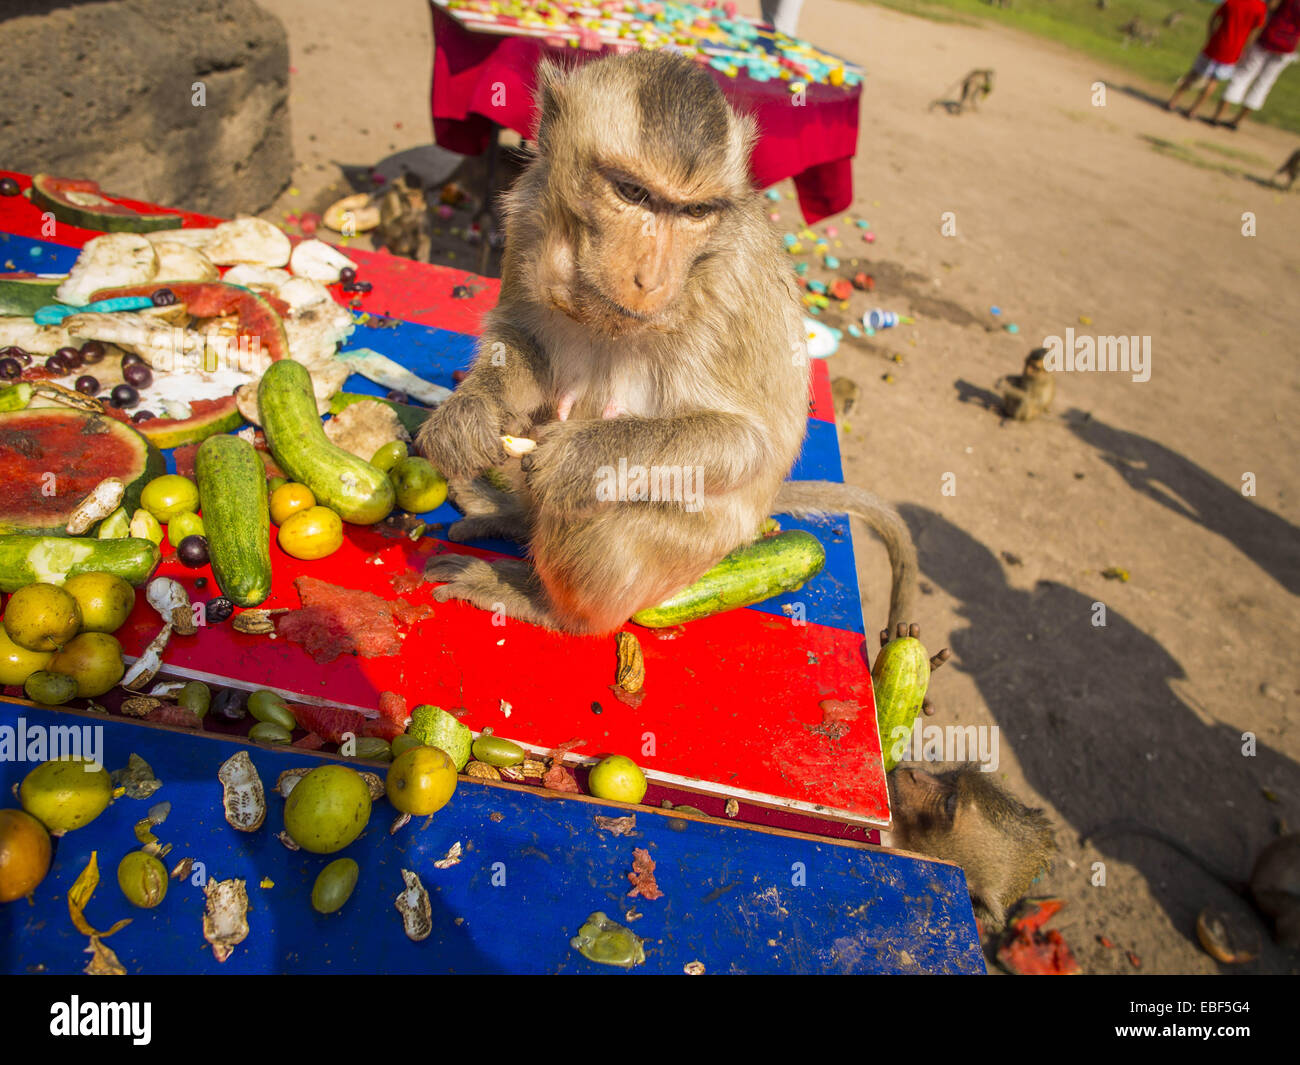 Lopburi Lopburi, Thaïlande. 30Th Nov, 2014. Les singes macaques à longue queue manger les fruits et légumes au buffet Buffet singe annuel partie à Lopburi, Thaïlande. Lopburi est la capitale de la province de Lopburi et est à environ 180 kilomètres de Bangkok. Lopburi abrite des milliers de macaques à longue queue. Un adulte de taille moyenne est de 38 à 55cm de long et sa queue est en général 40 à 65 cm. Les macaques mâles pèsent environ 5 à 9 kilos, les femelles pèsent environ 3 à 6 kg. Le Singe Buffet était commencé dans les années 1980 par un homme d'affaires local qui possède un hôtel et voulait attirer des visiteurs à l'provinci Banque D'Images